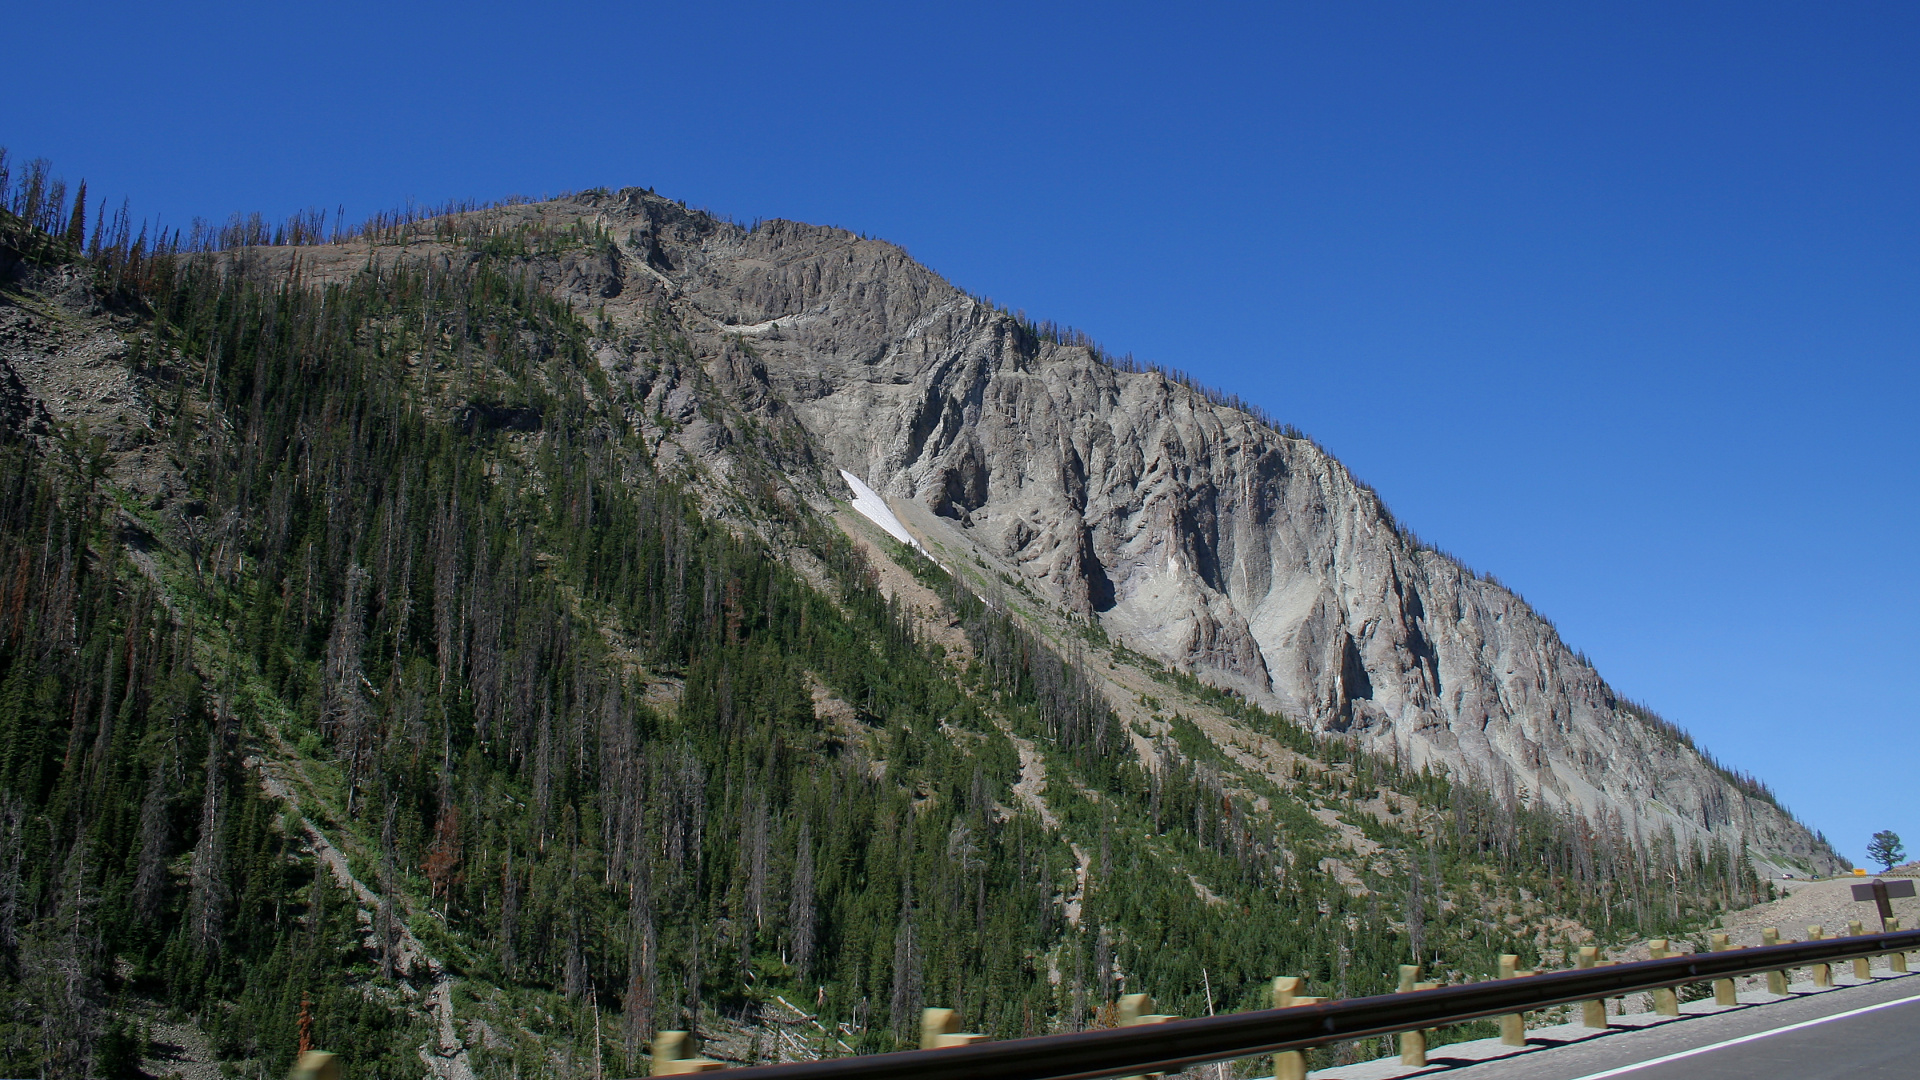 Sylvan Pass (Podróże » USA: Na ziemi Czejenów » Wielka Podróż » Park Narodowy Yellowstone)